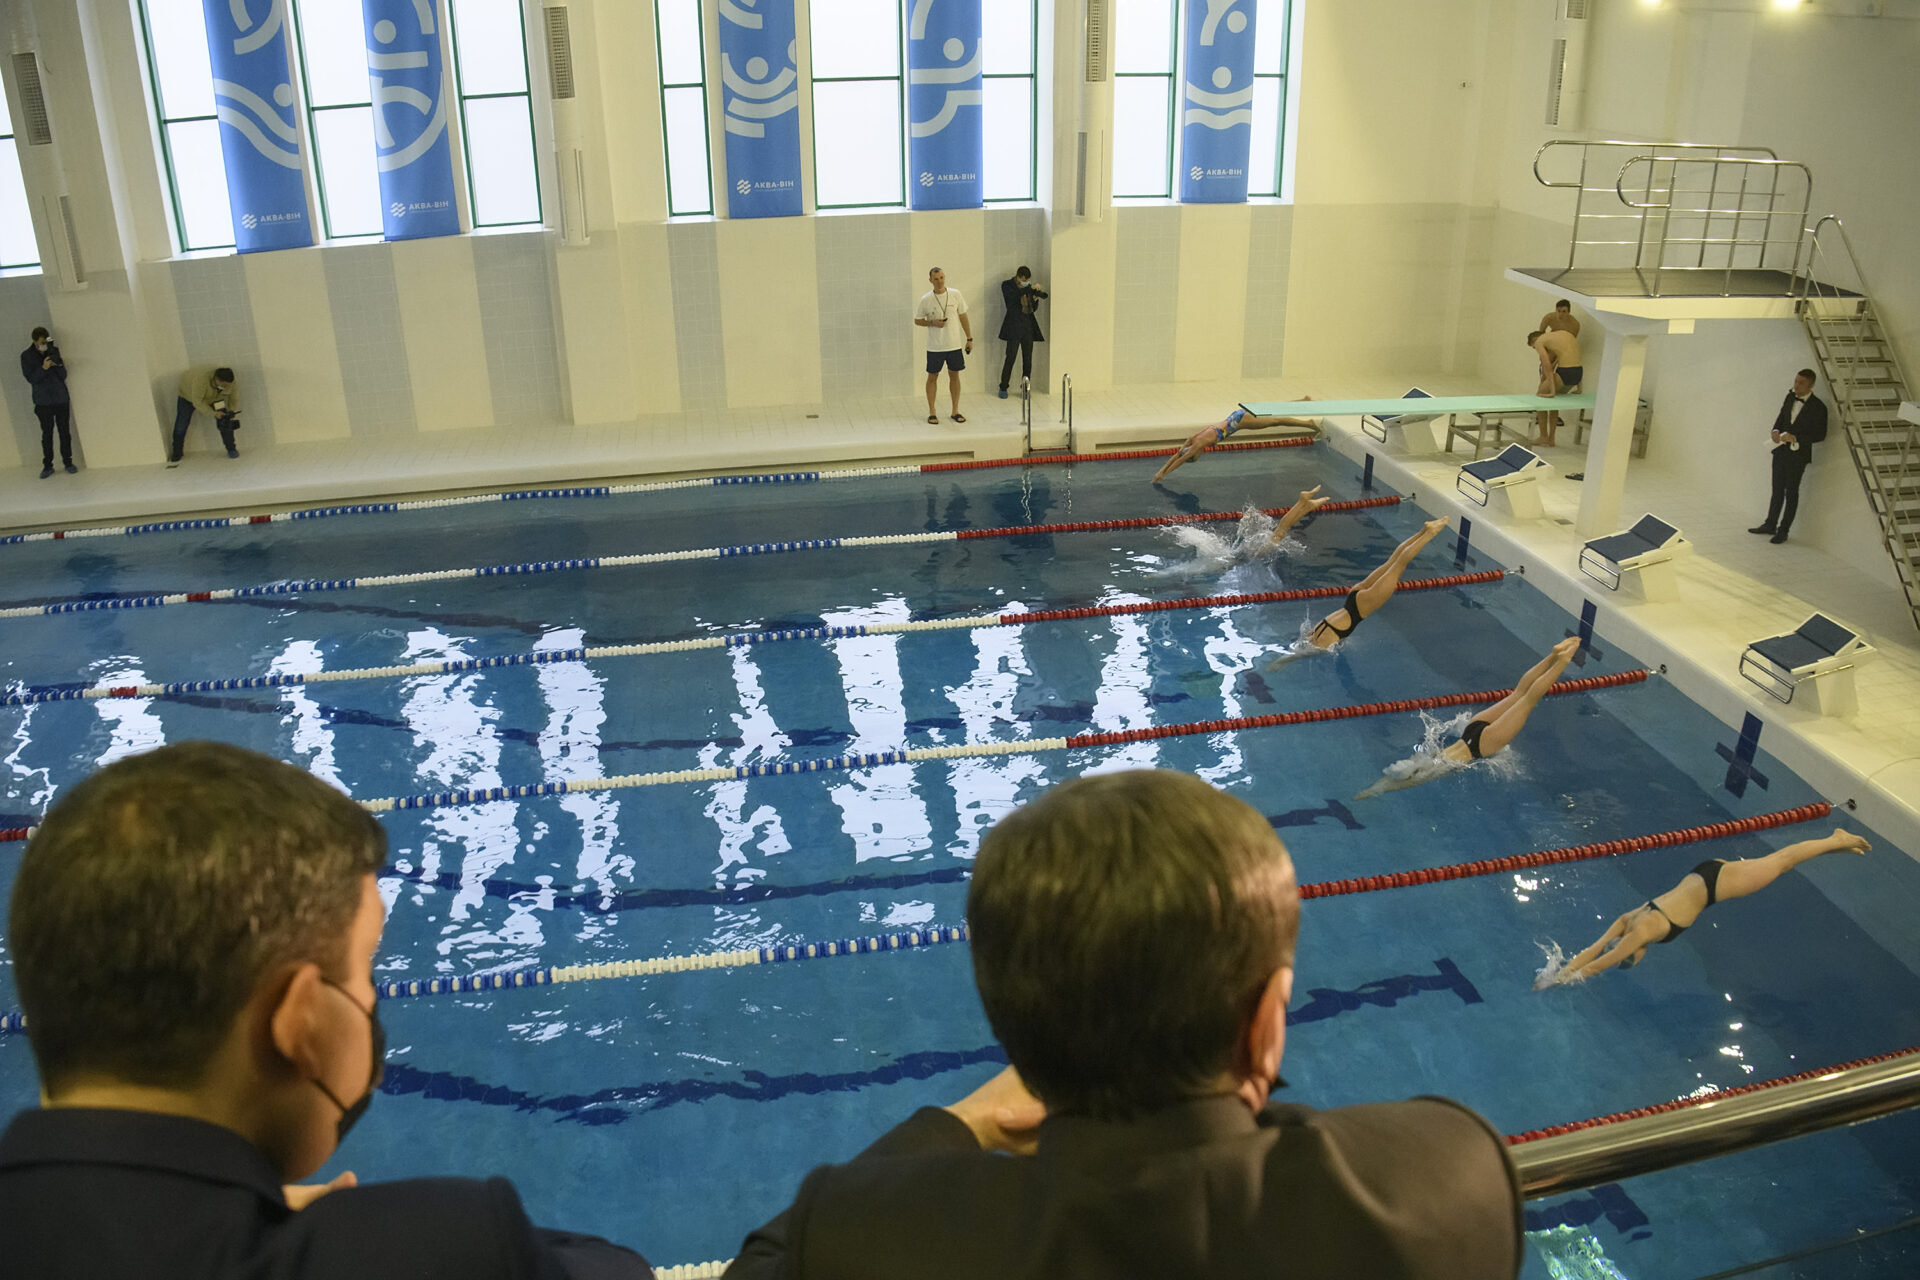 Замість аварійної будівлі вінничани отримали сучасний інклюзивний спорткомплекс з басейном, - Сергій Моргунов на відкритті комплексу «Аква-він»